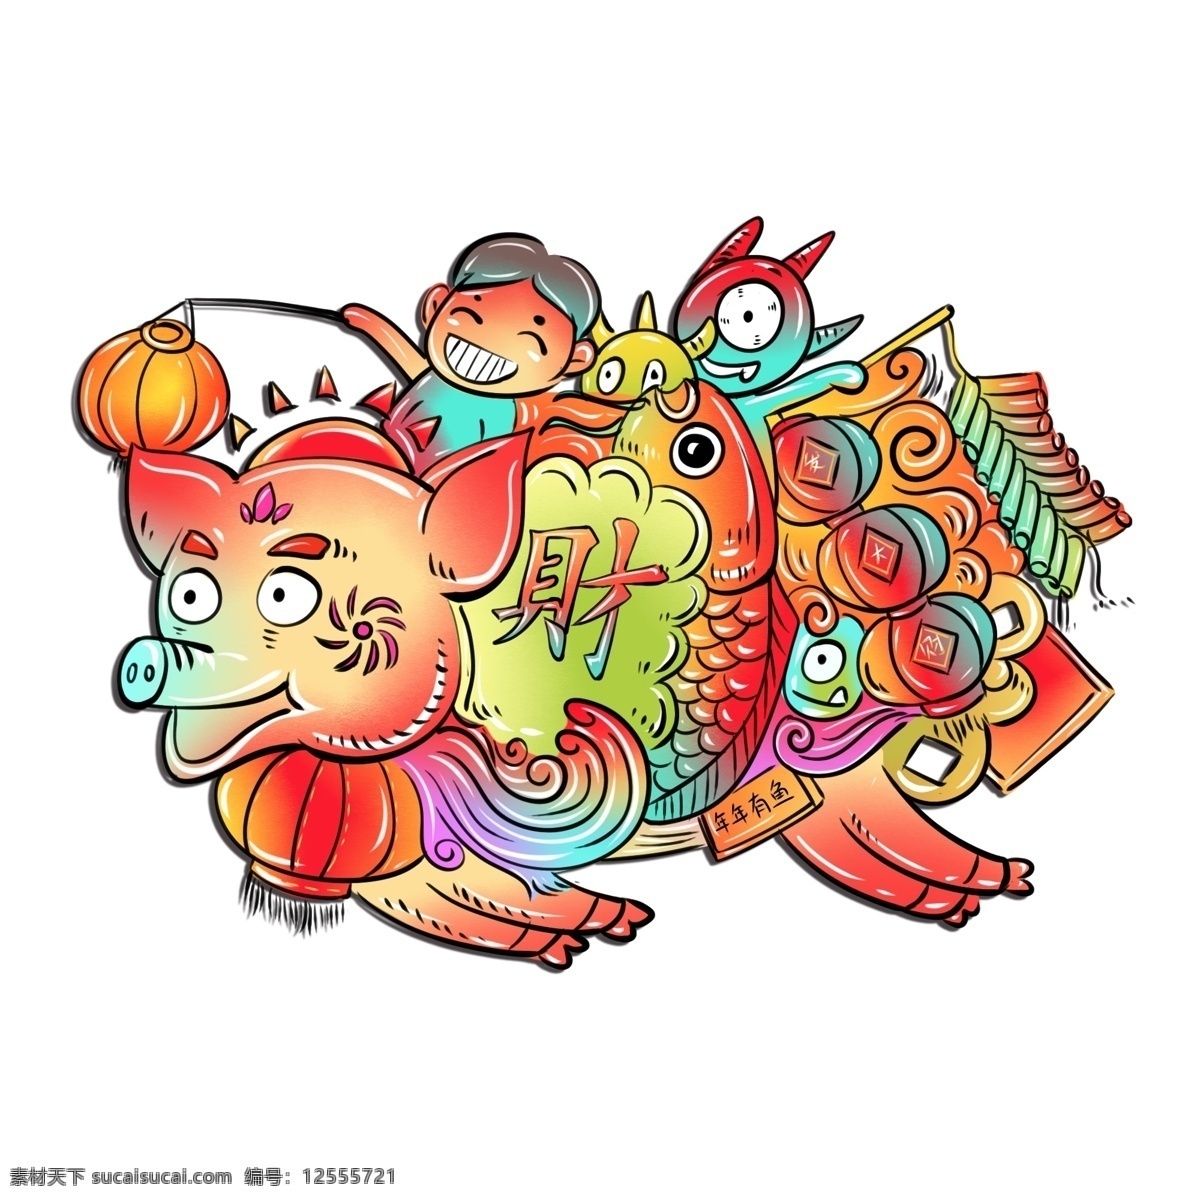 2019 春节 猪年 涂鸦 风 生肖 猪 可爱 喜庆 商用 原创 手绘 插画 ip 形象 元素 欧美 街头 中国风 涂鸦风